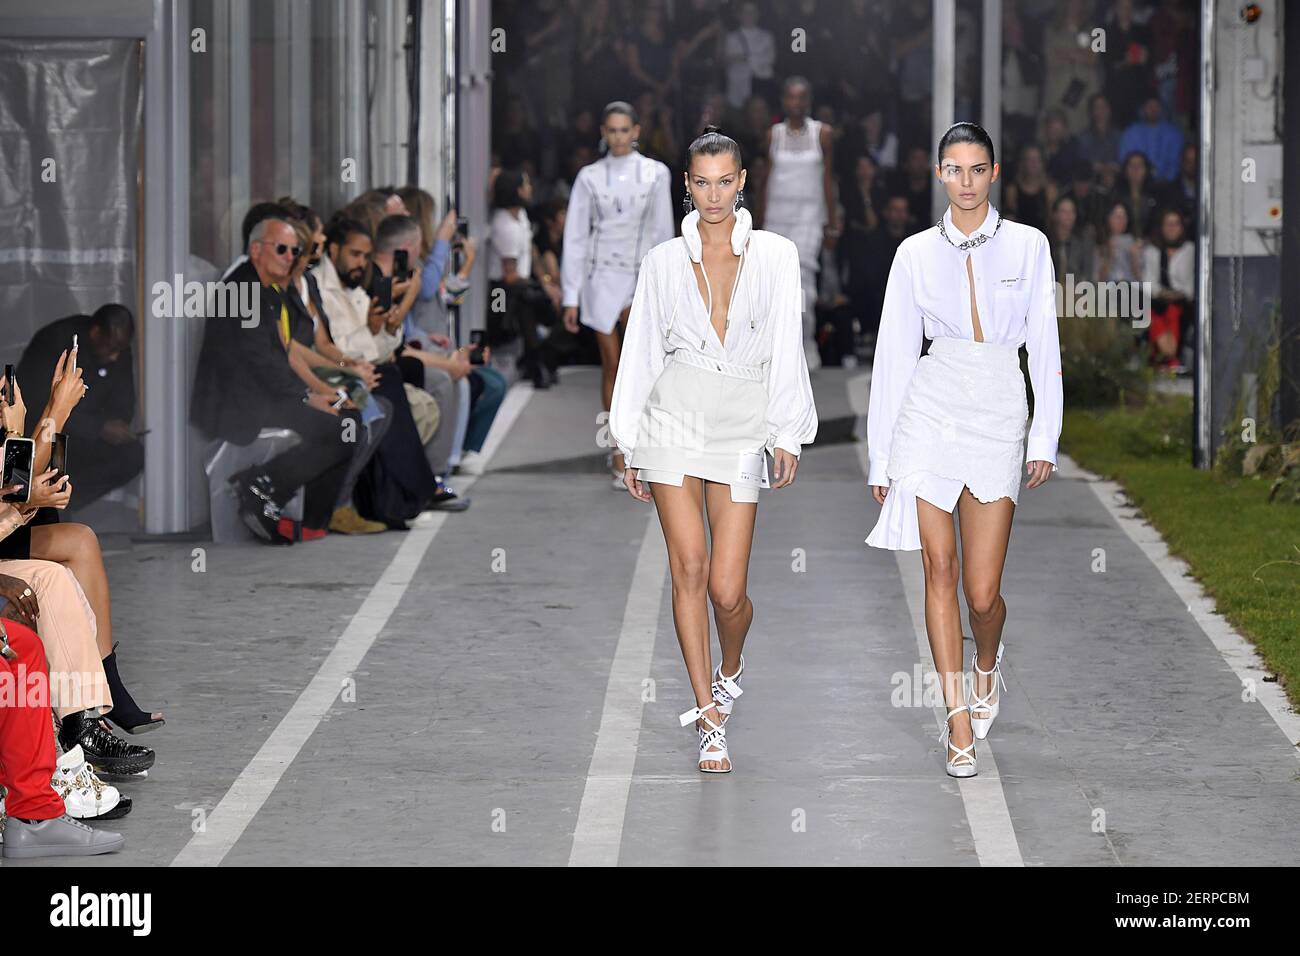 Le mannequin Bella Hadid et Kendall Jenner se promène sur la piste lors du  défilé de mode Off-White lors de la semaine de mode de Paris Printemps été  2019, qui s'est tenue